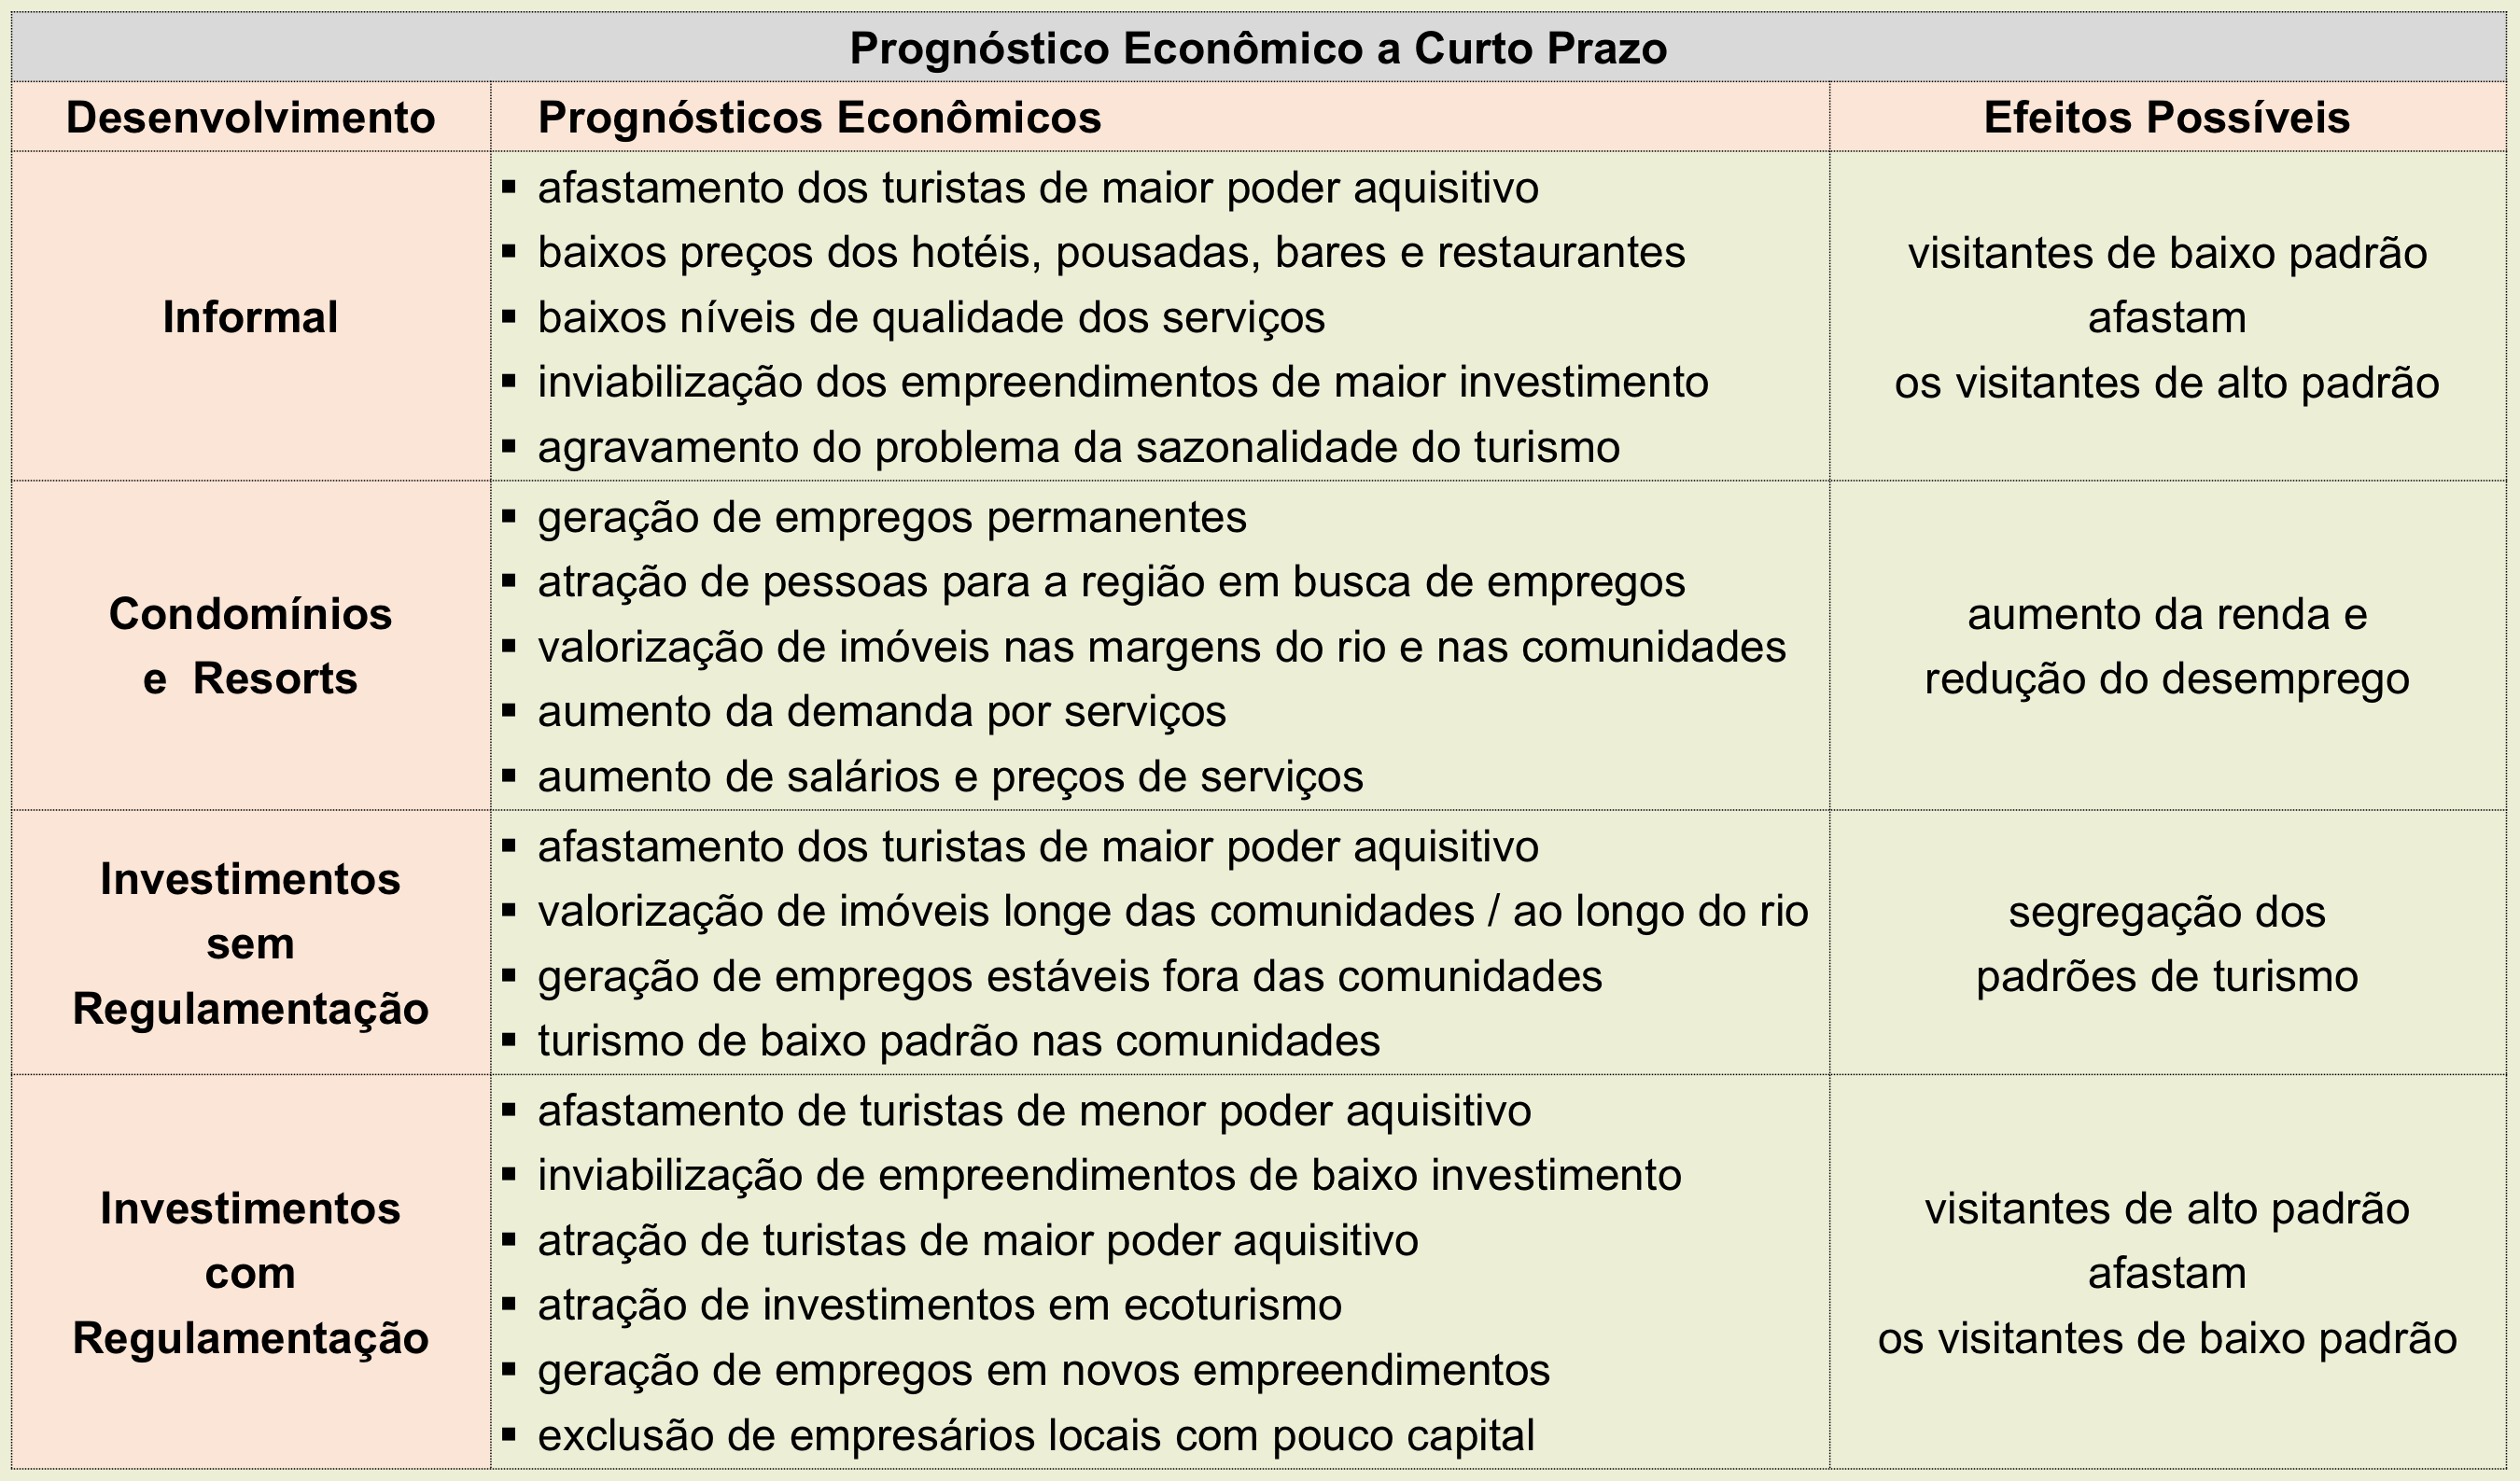 maranhao analise prognostico economico curto prazo